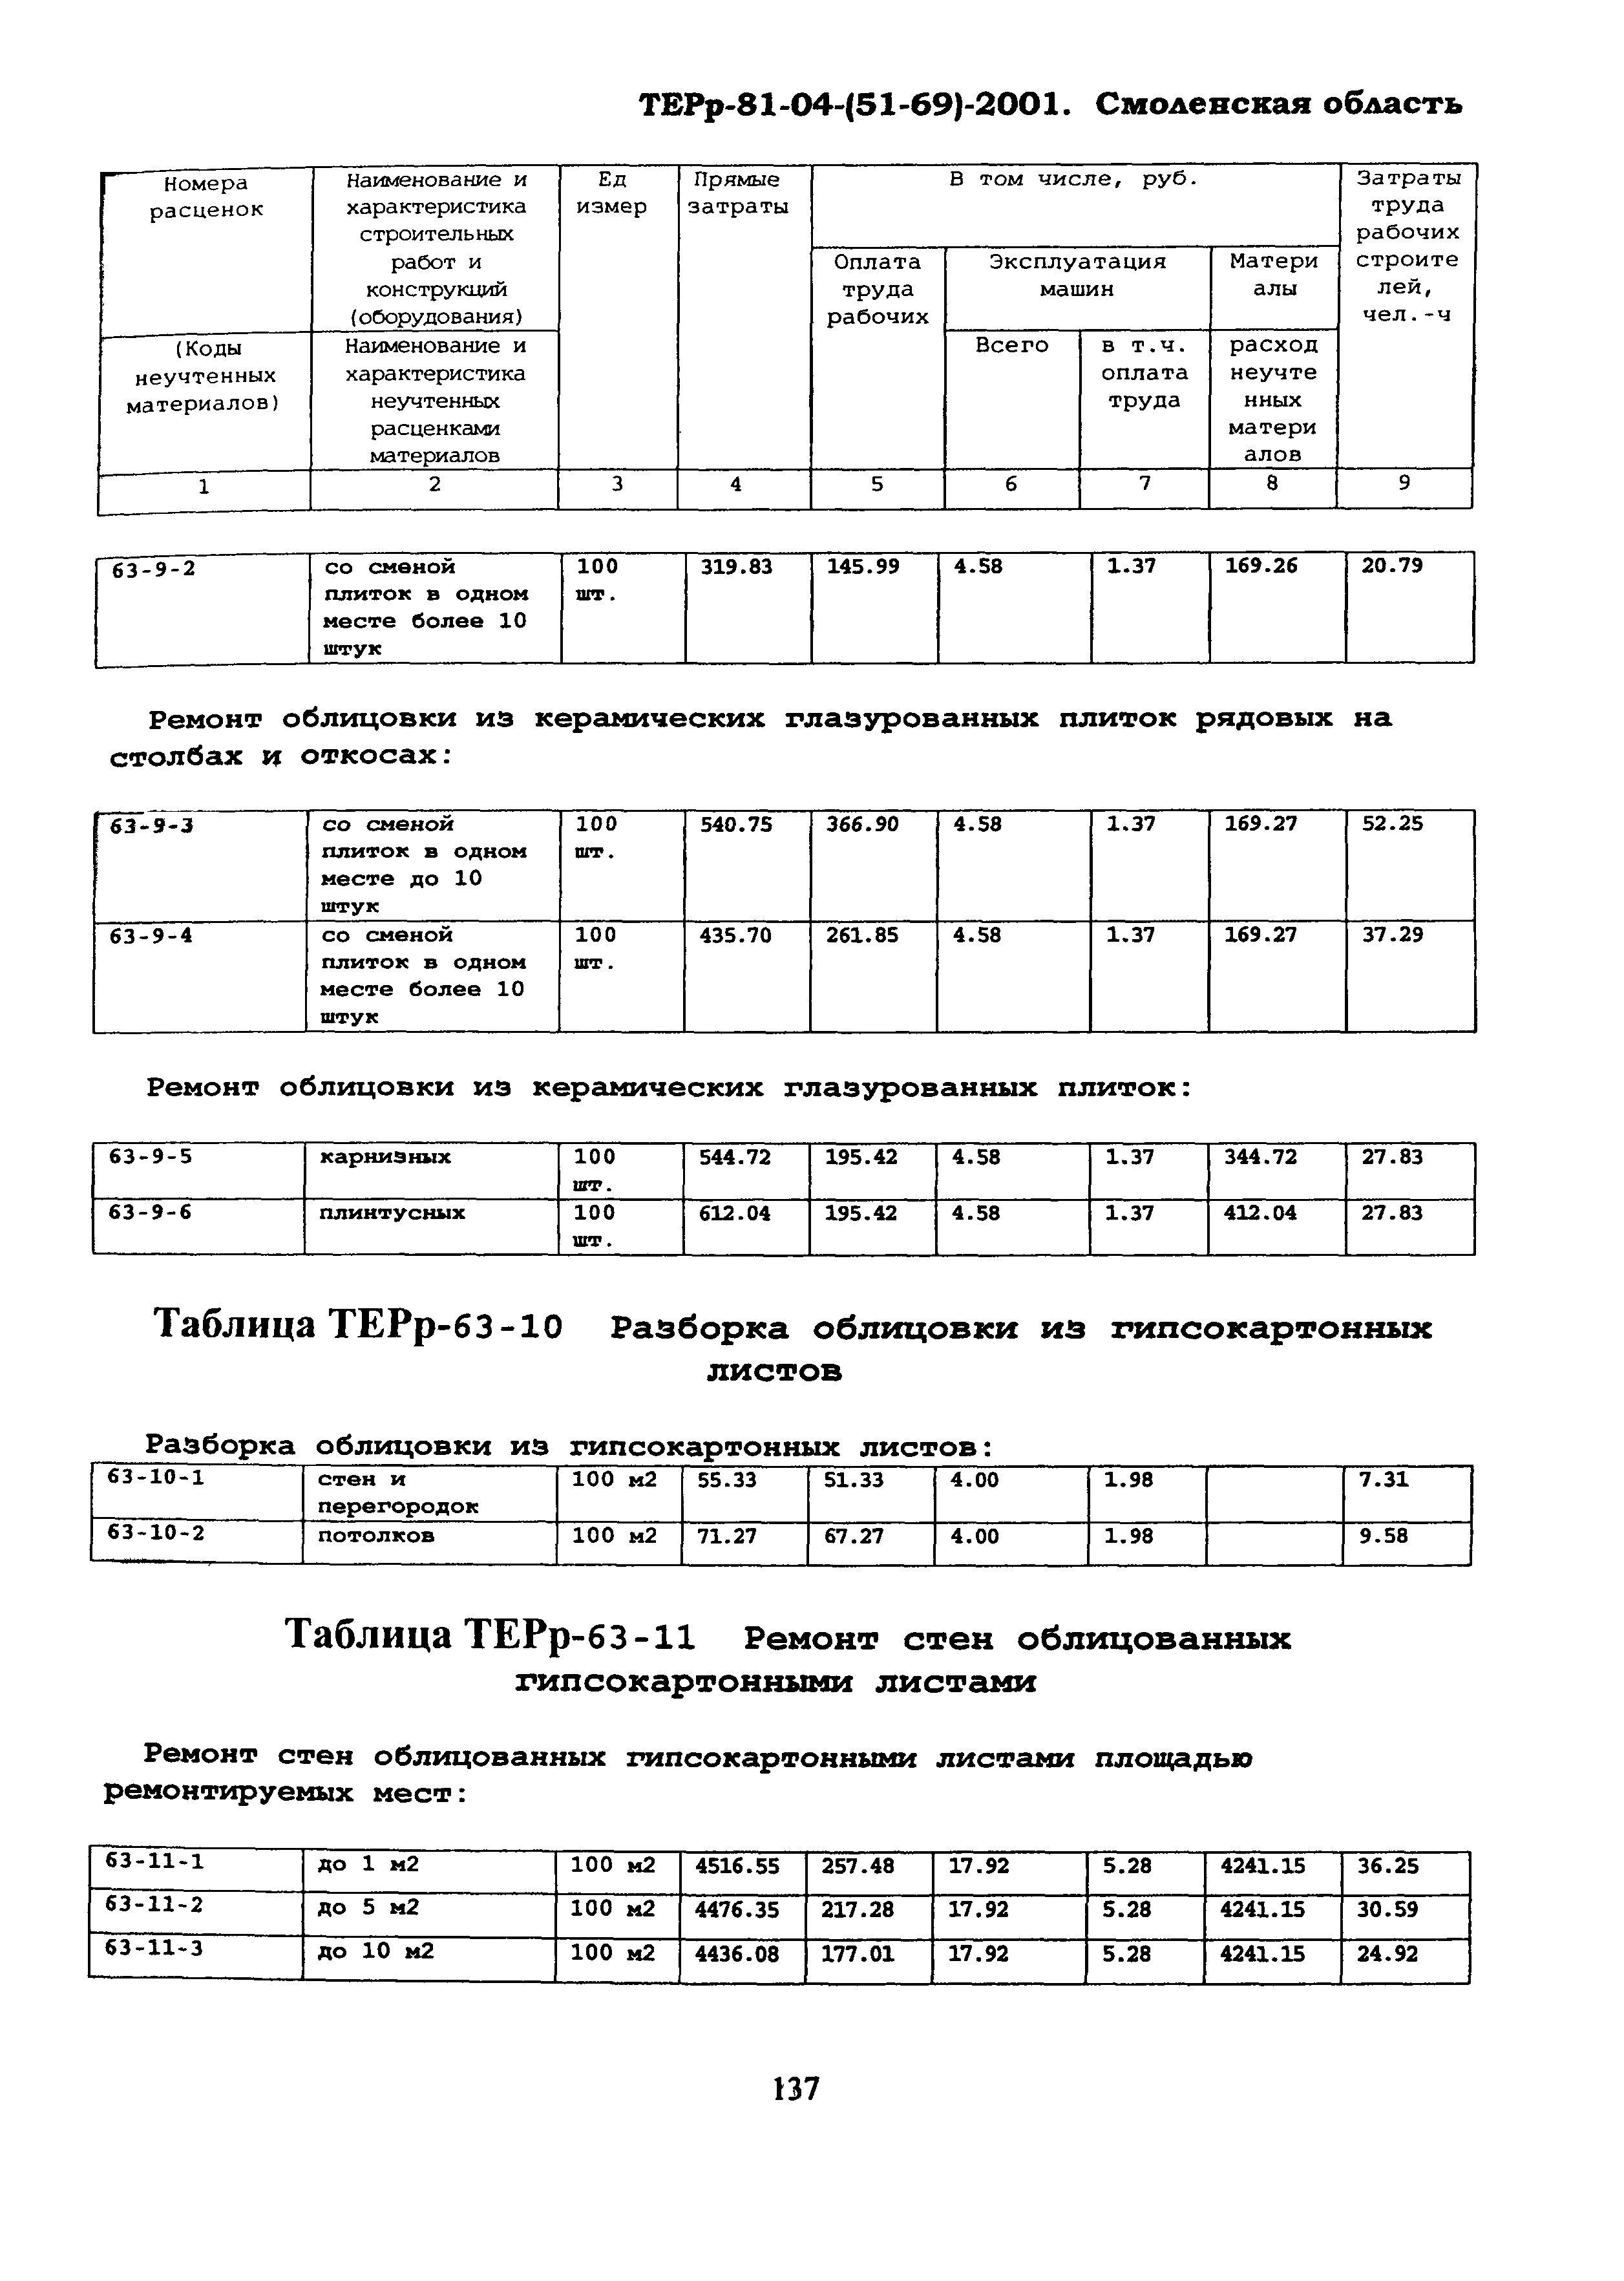 ТЕРр Смоленской области 2001-63